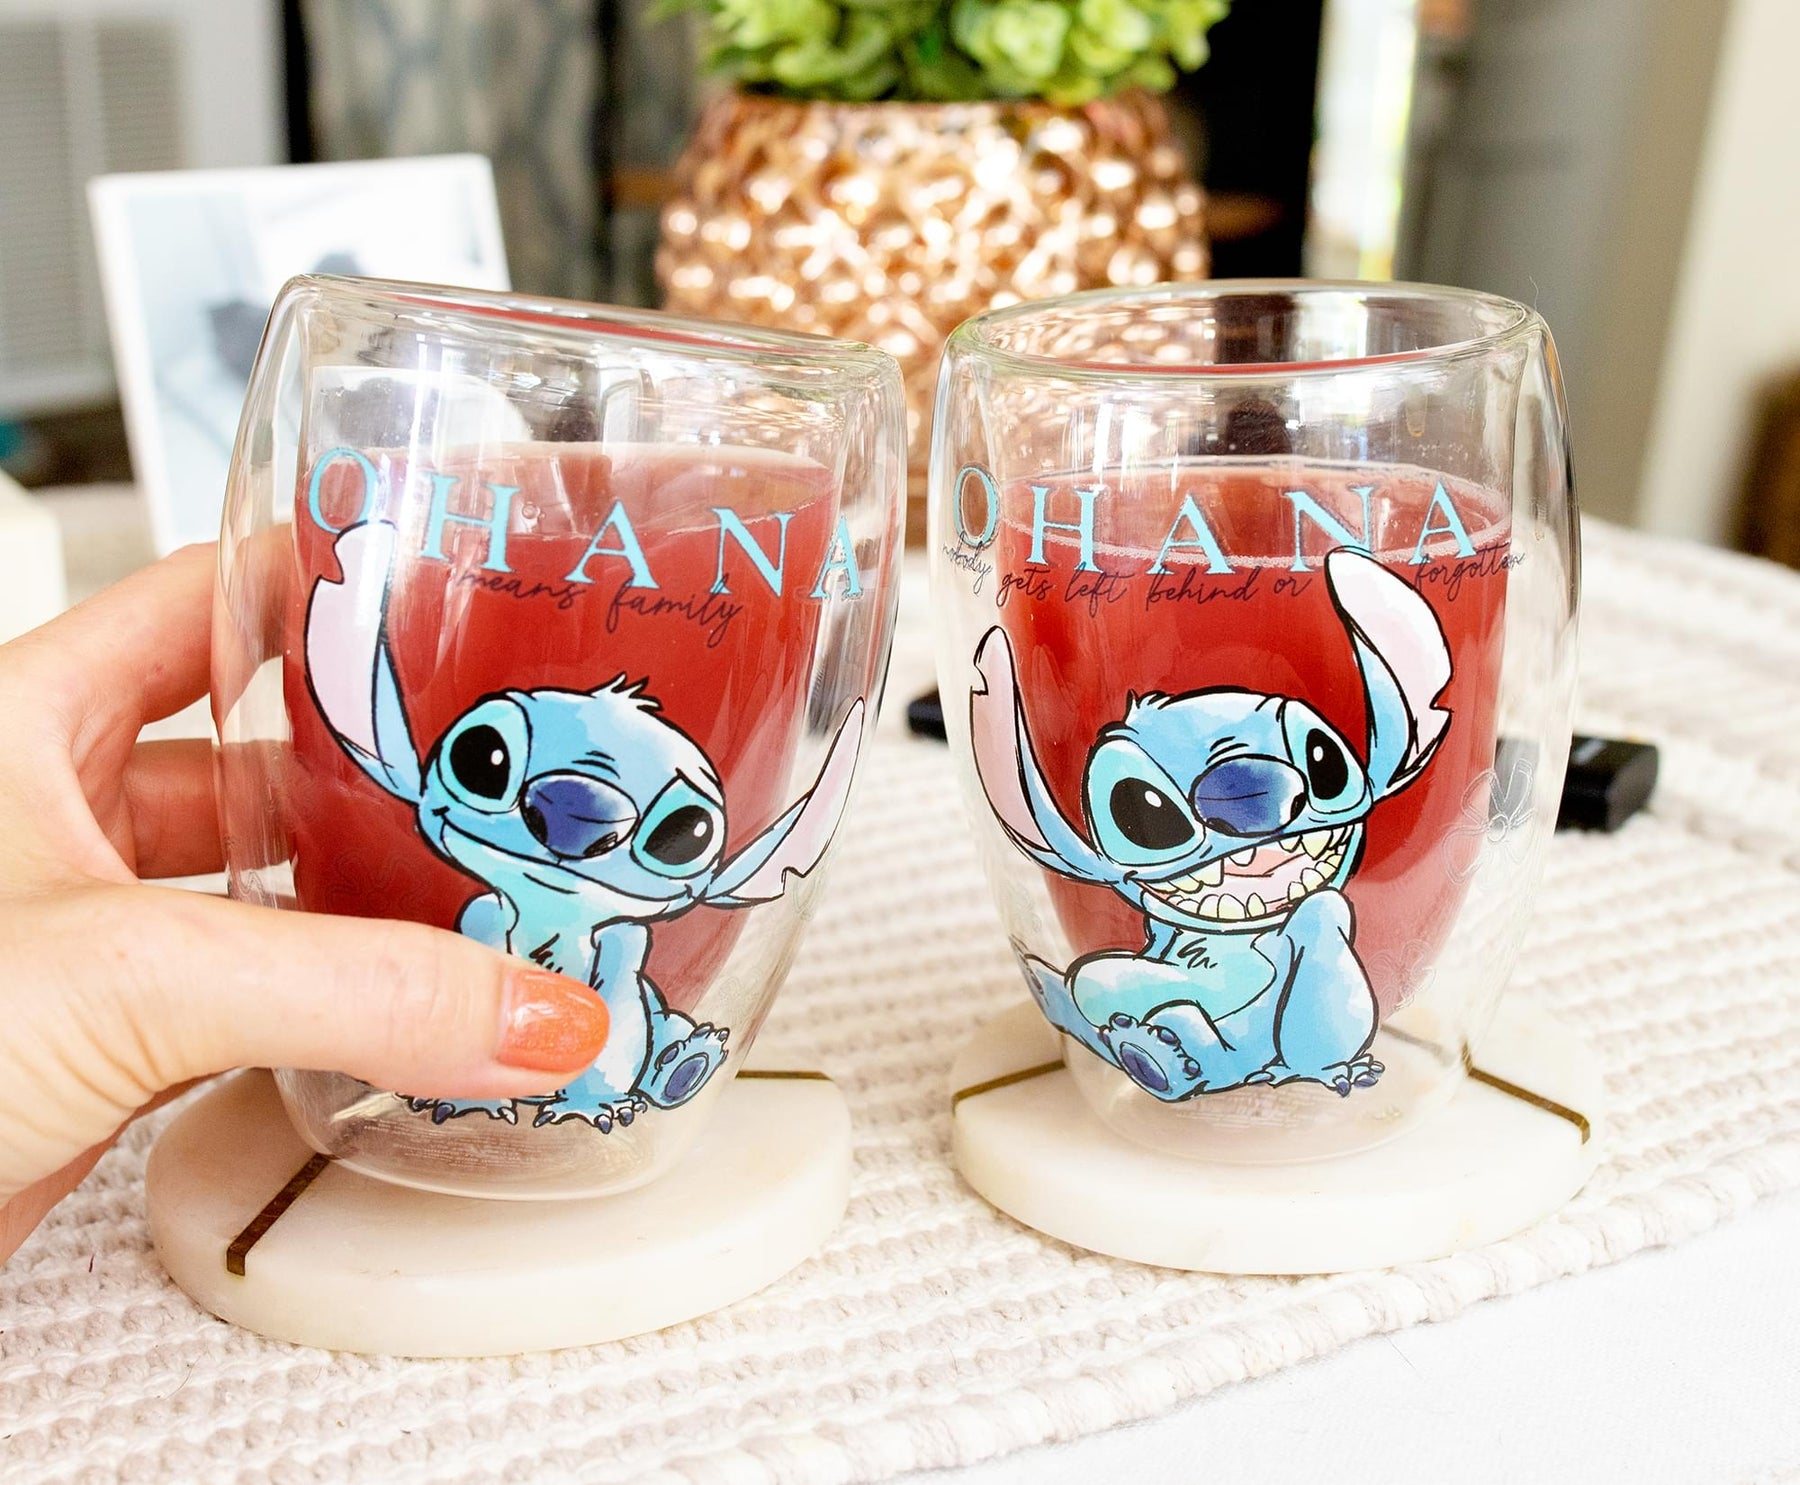 Lilo & Stitch Rainbow Pineapples Teardrop Wine Glass 20 oz – Shadow Anime